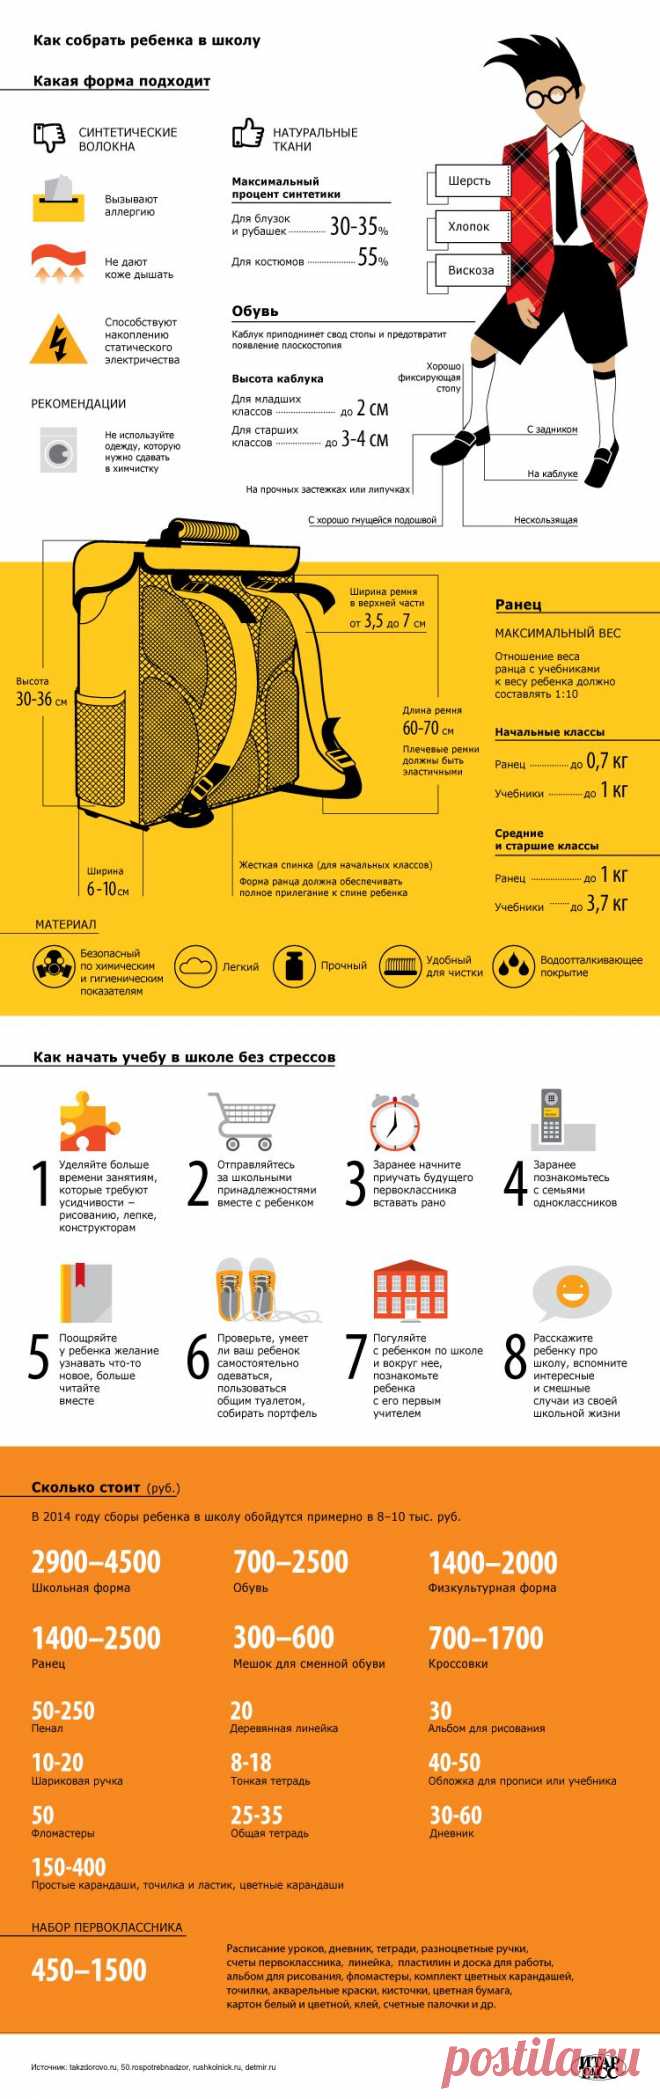 ТАСС Инфографика: Как собрать ребенка в школу